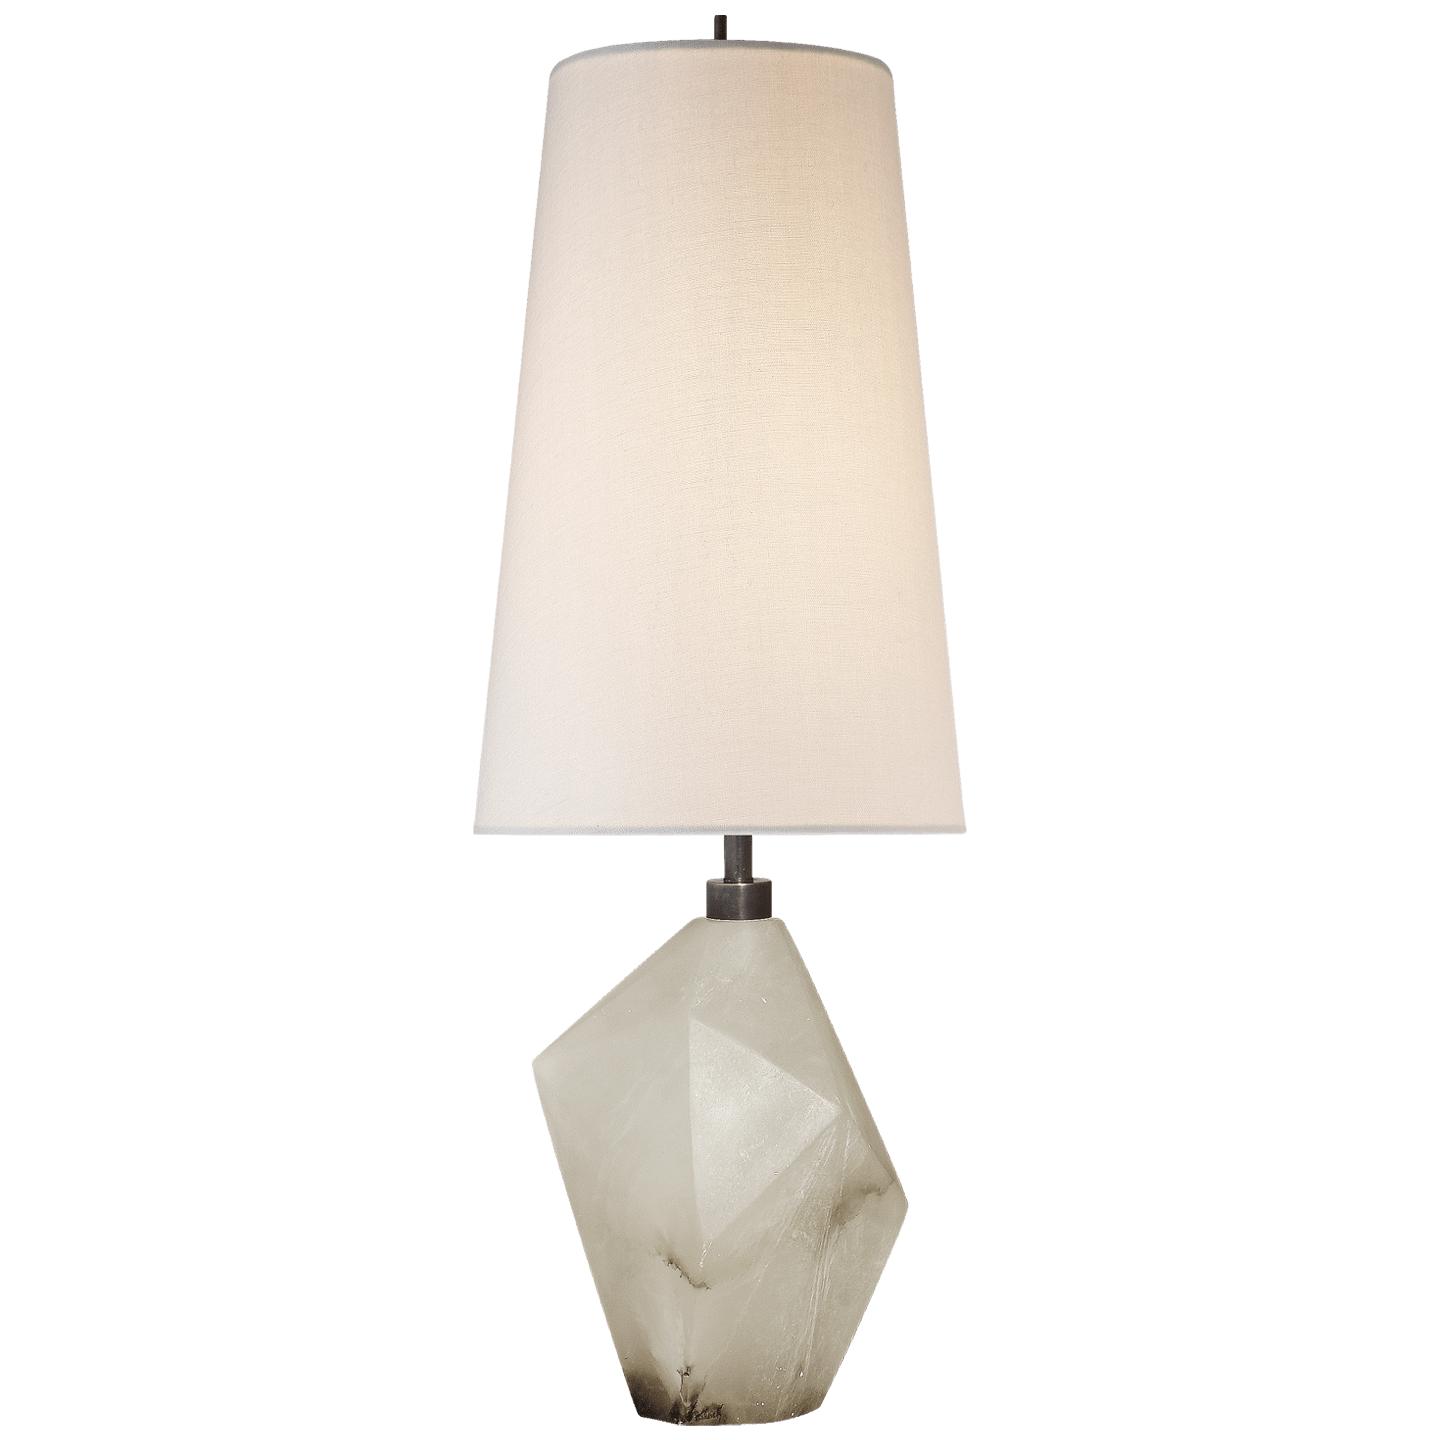 Купить Настольная лампа Halcyon Accent Table Lamp в интернет-магазине roooms.ru